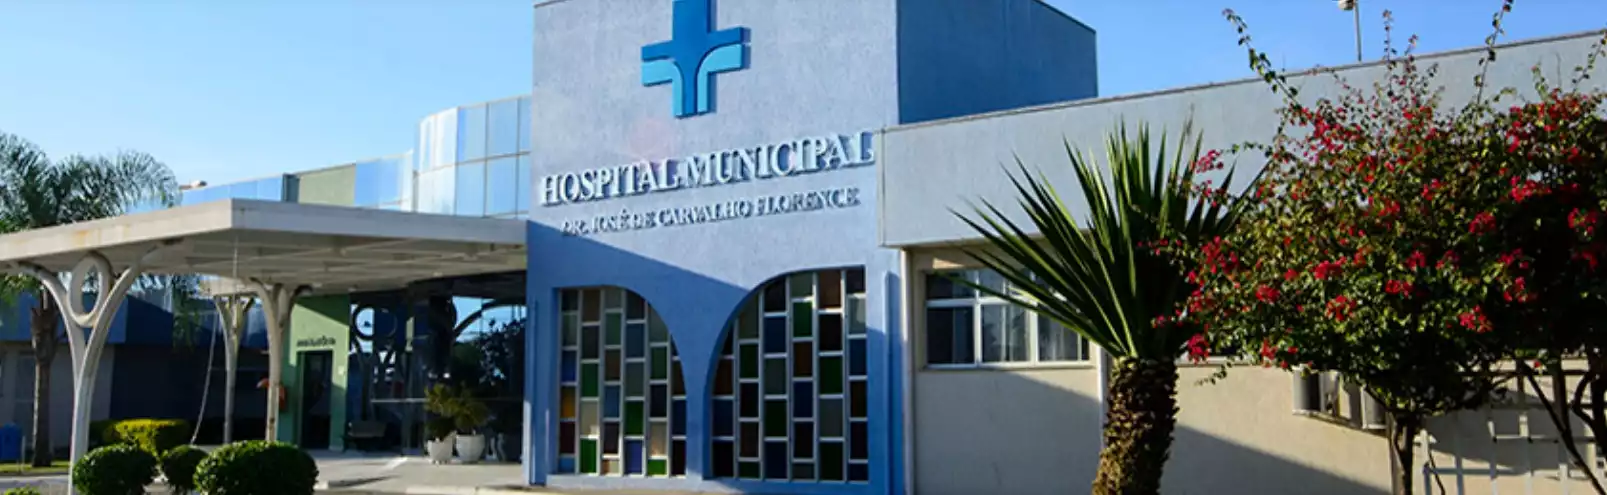 Velório Hospital Municipal Doutor Jose de Carvalho Florence - São José dos Campos